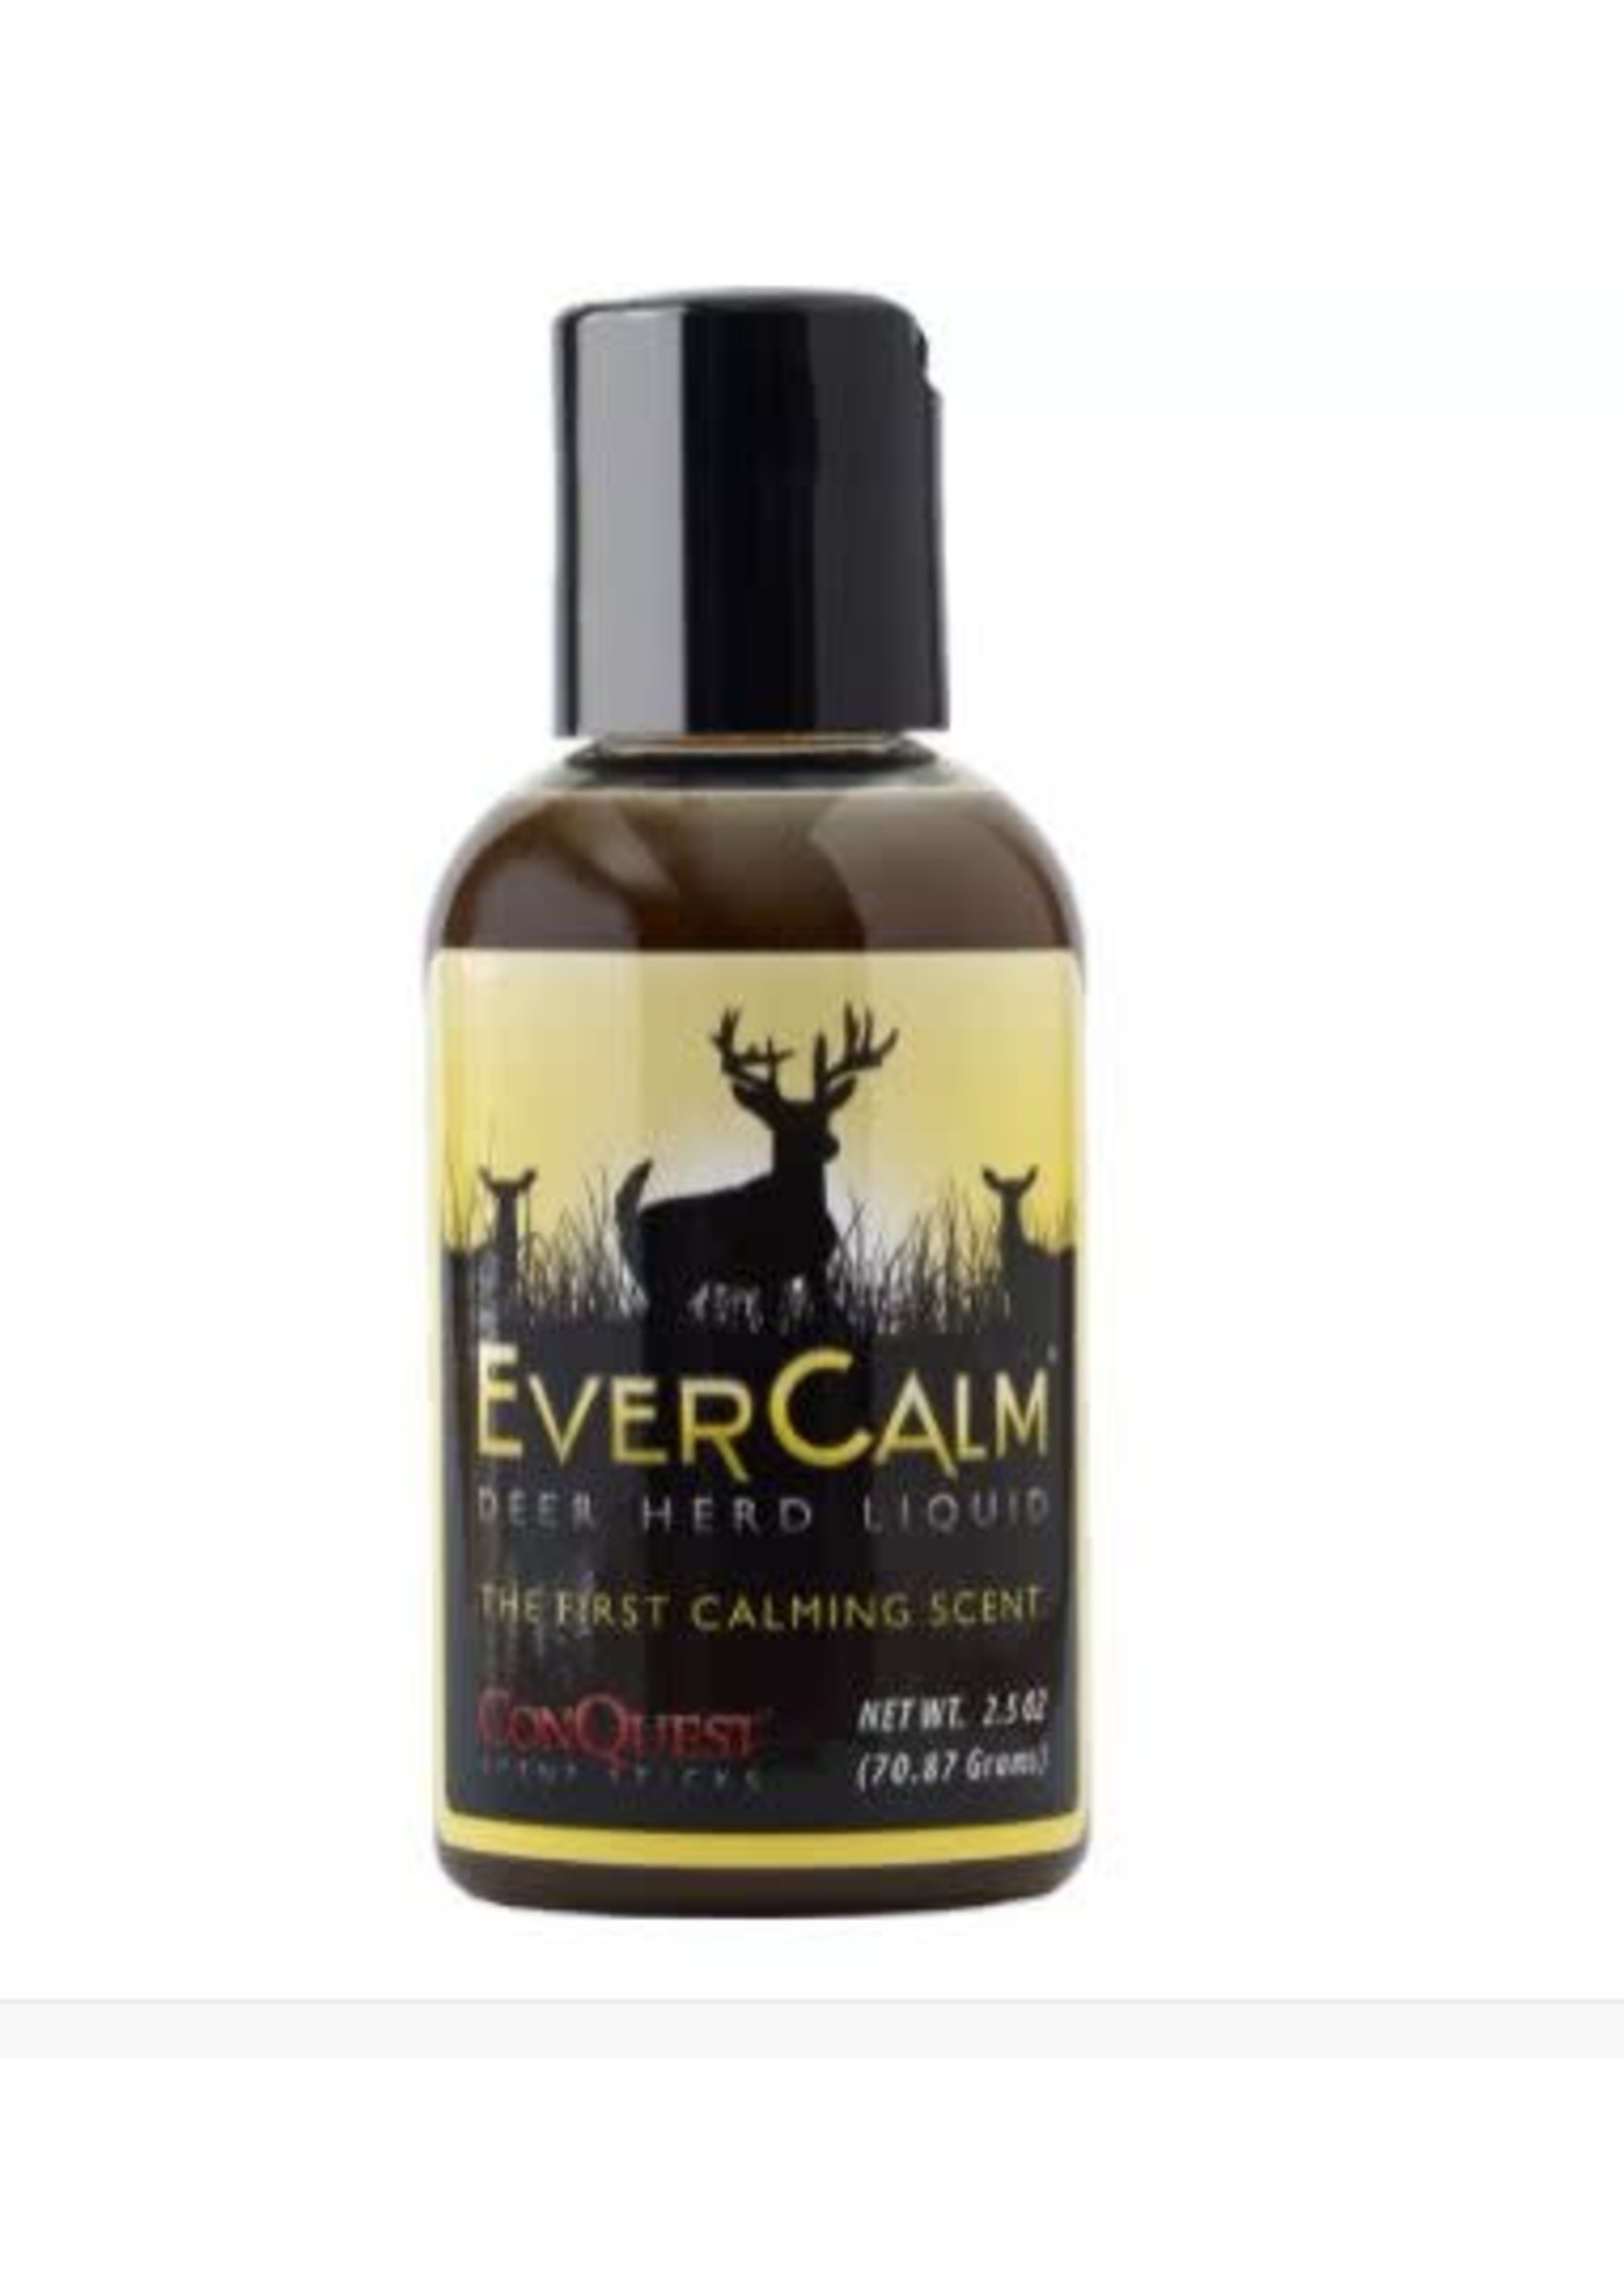 Ever Calm Ever Calm - Deer Herd Liquid